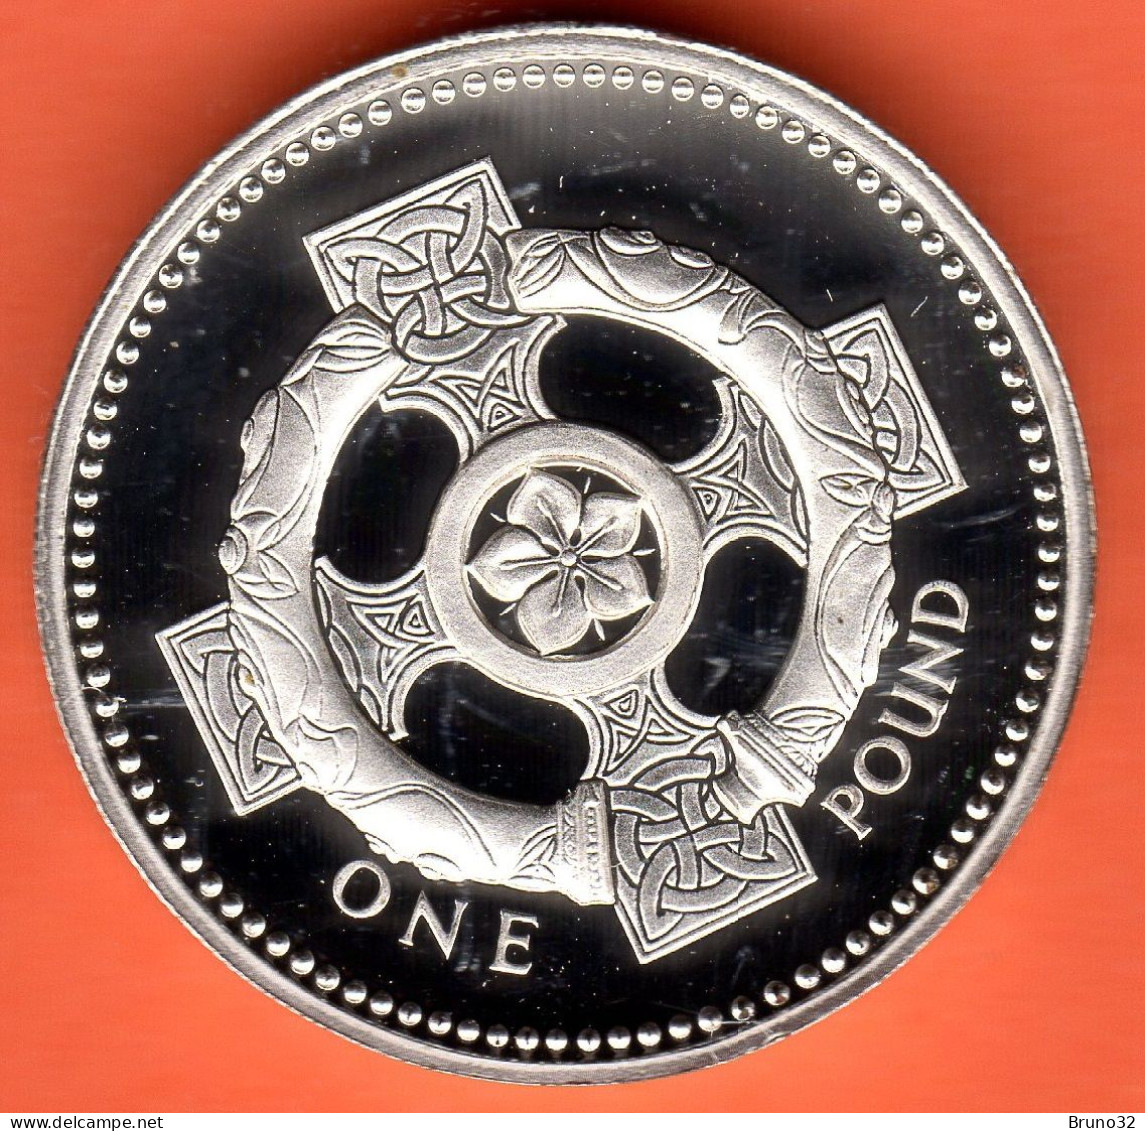 Gran Bretagna - GB - 1 ONE POUND - 1996 - Silver PROOF FDC/UNC - Come Da Foto (Senza Confezione) - 1 Pond